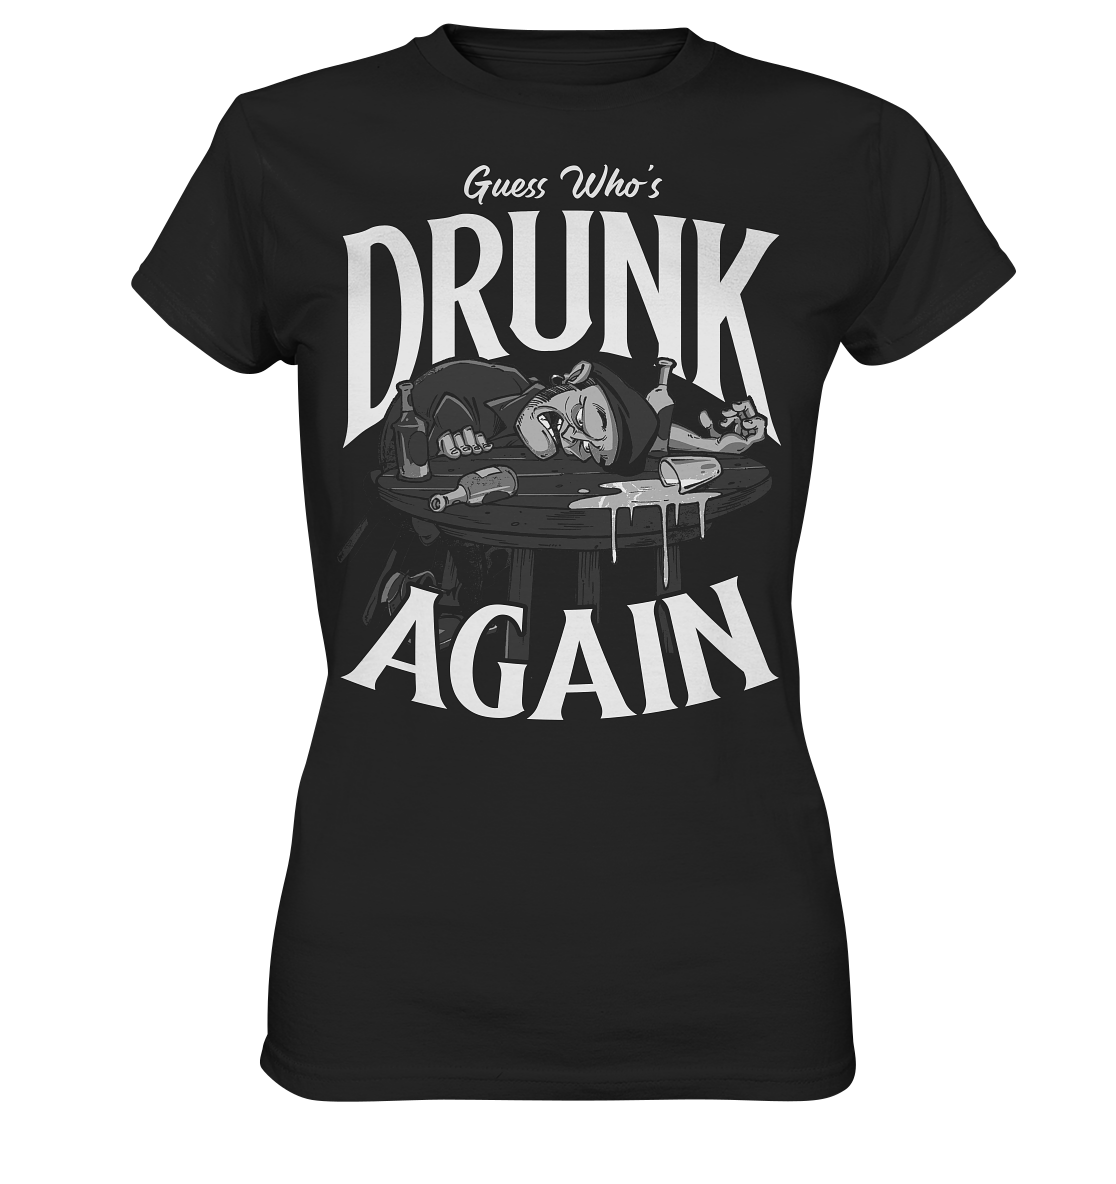 Guess Who's Drunk Again - Ladies Premium Shirt